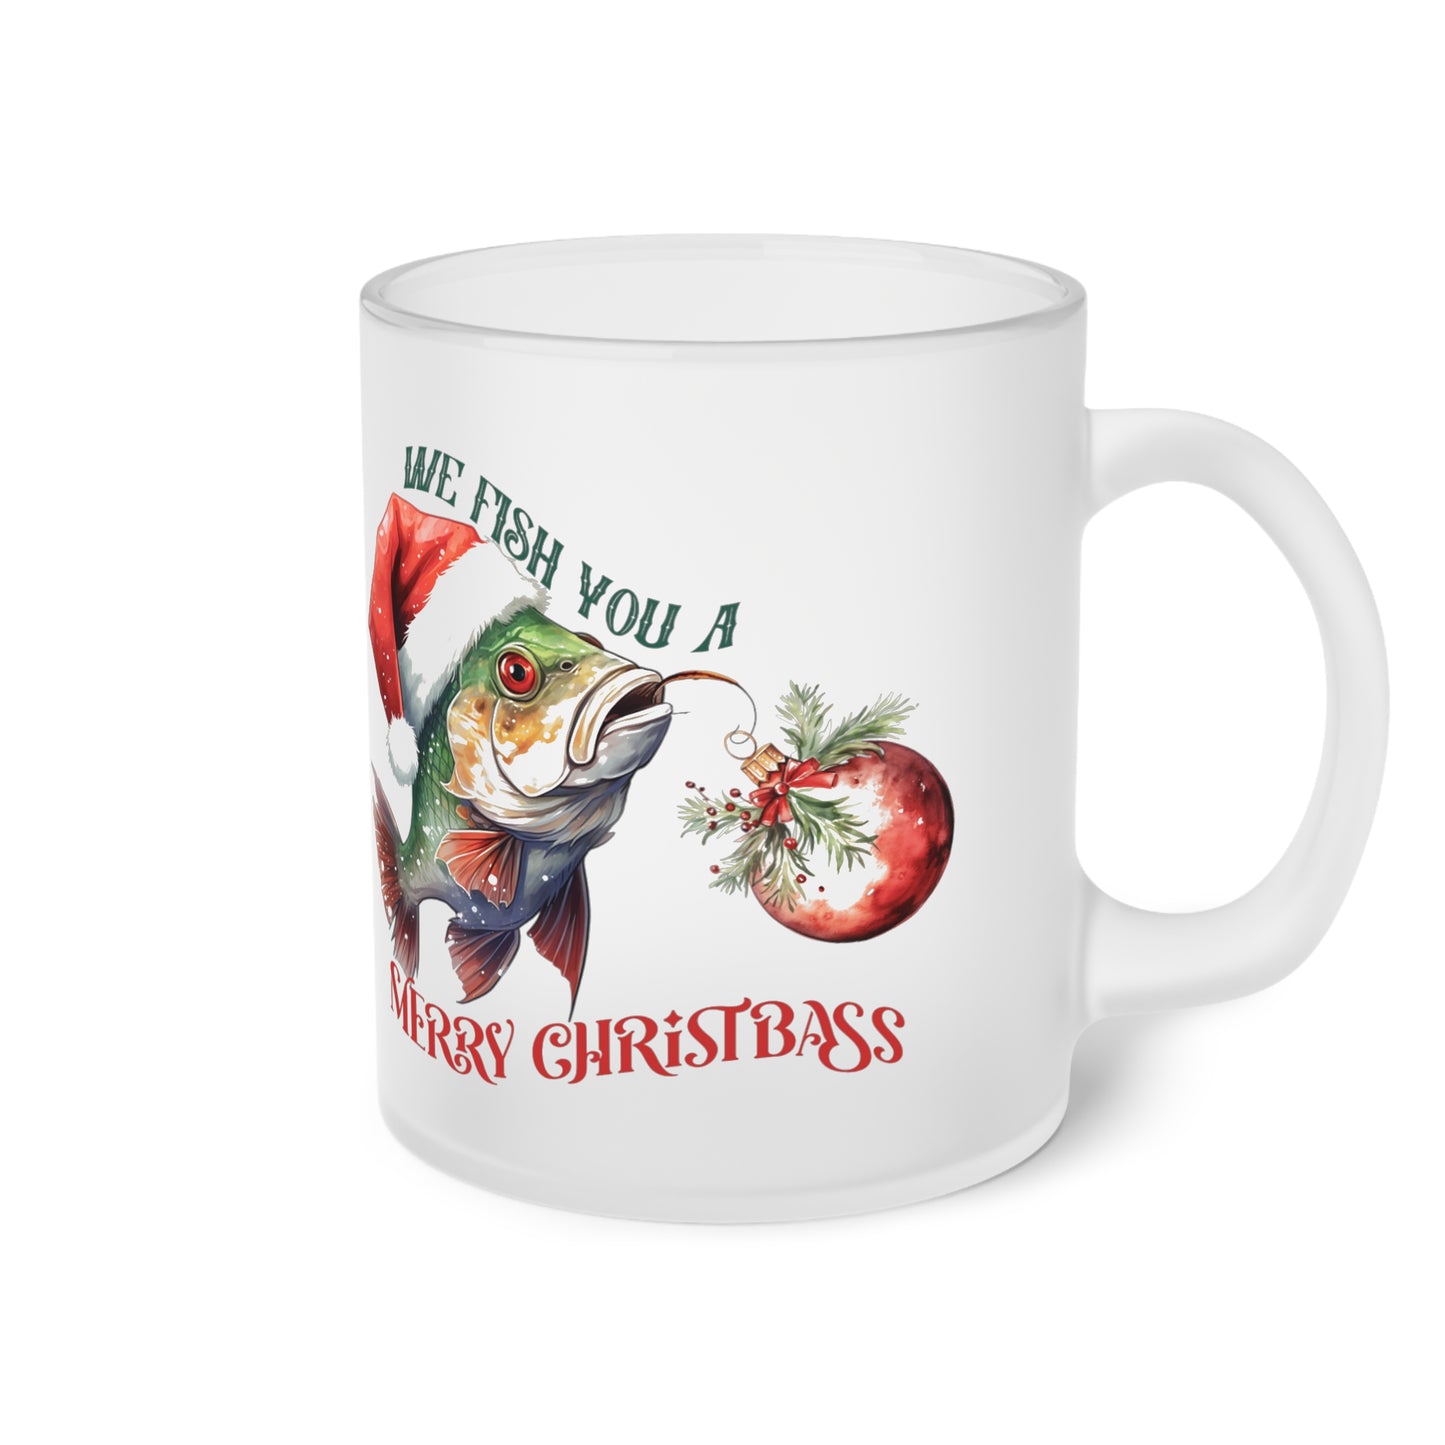 Frosted Glass Mug, Cute Christmas Mug, Fish Themed Holiday Mug, Frosted Mug, Cute Coffee Mug, Holiday Coffee Mug, Frosted Holiday Coffee Mug